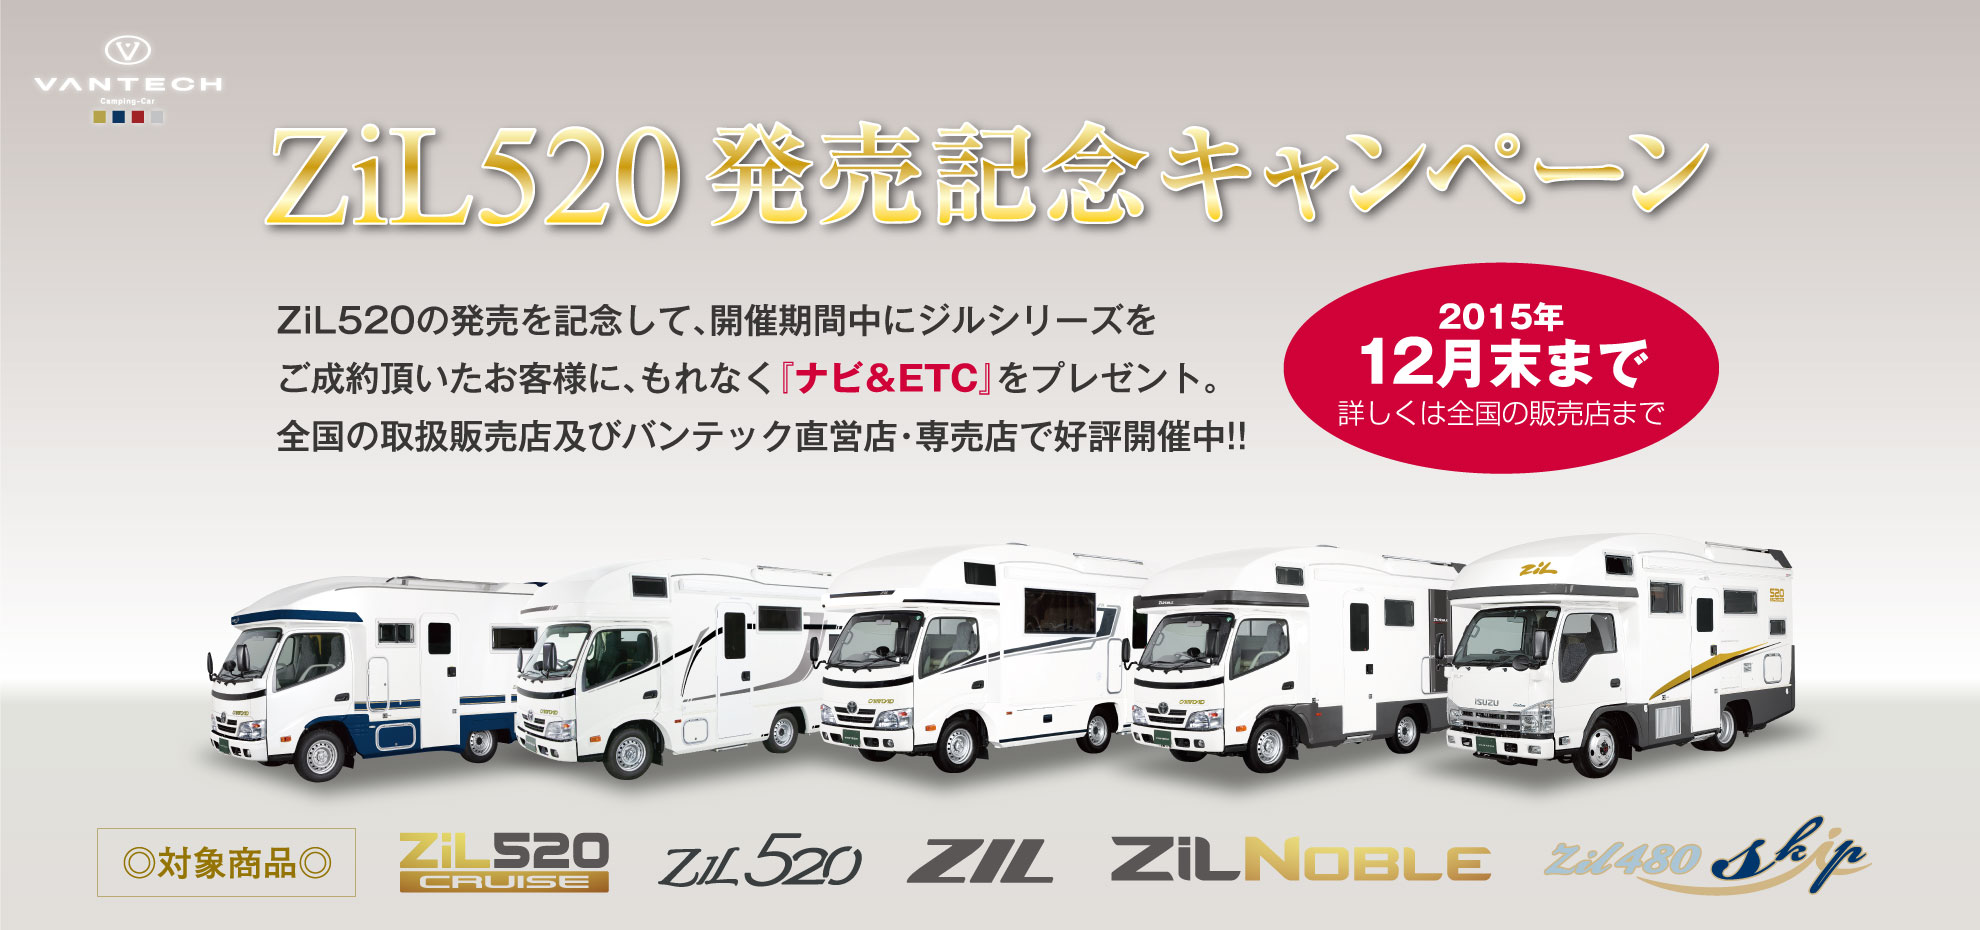 ZiL520発売記念キャンペーン